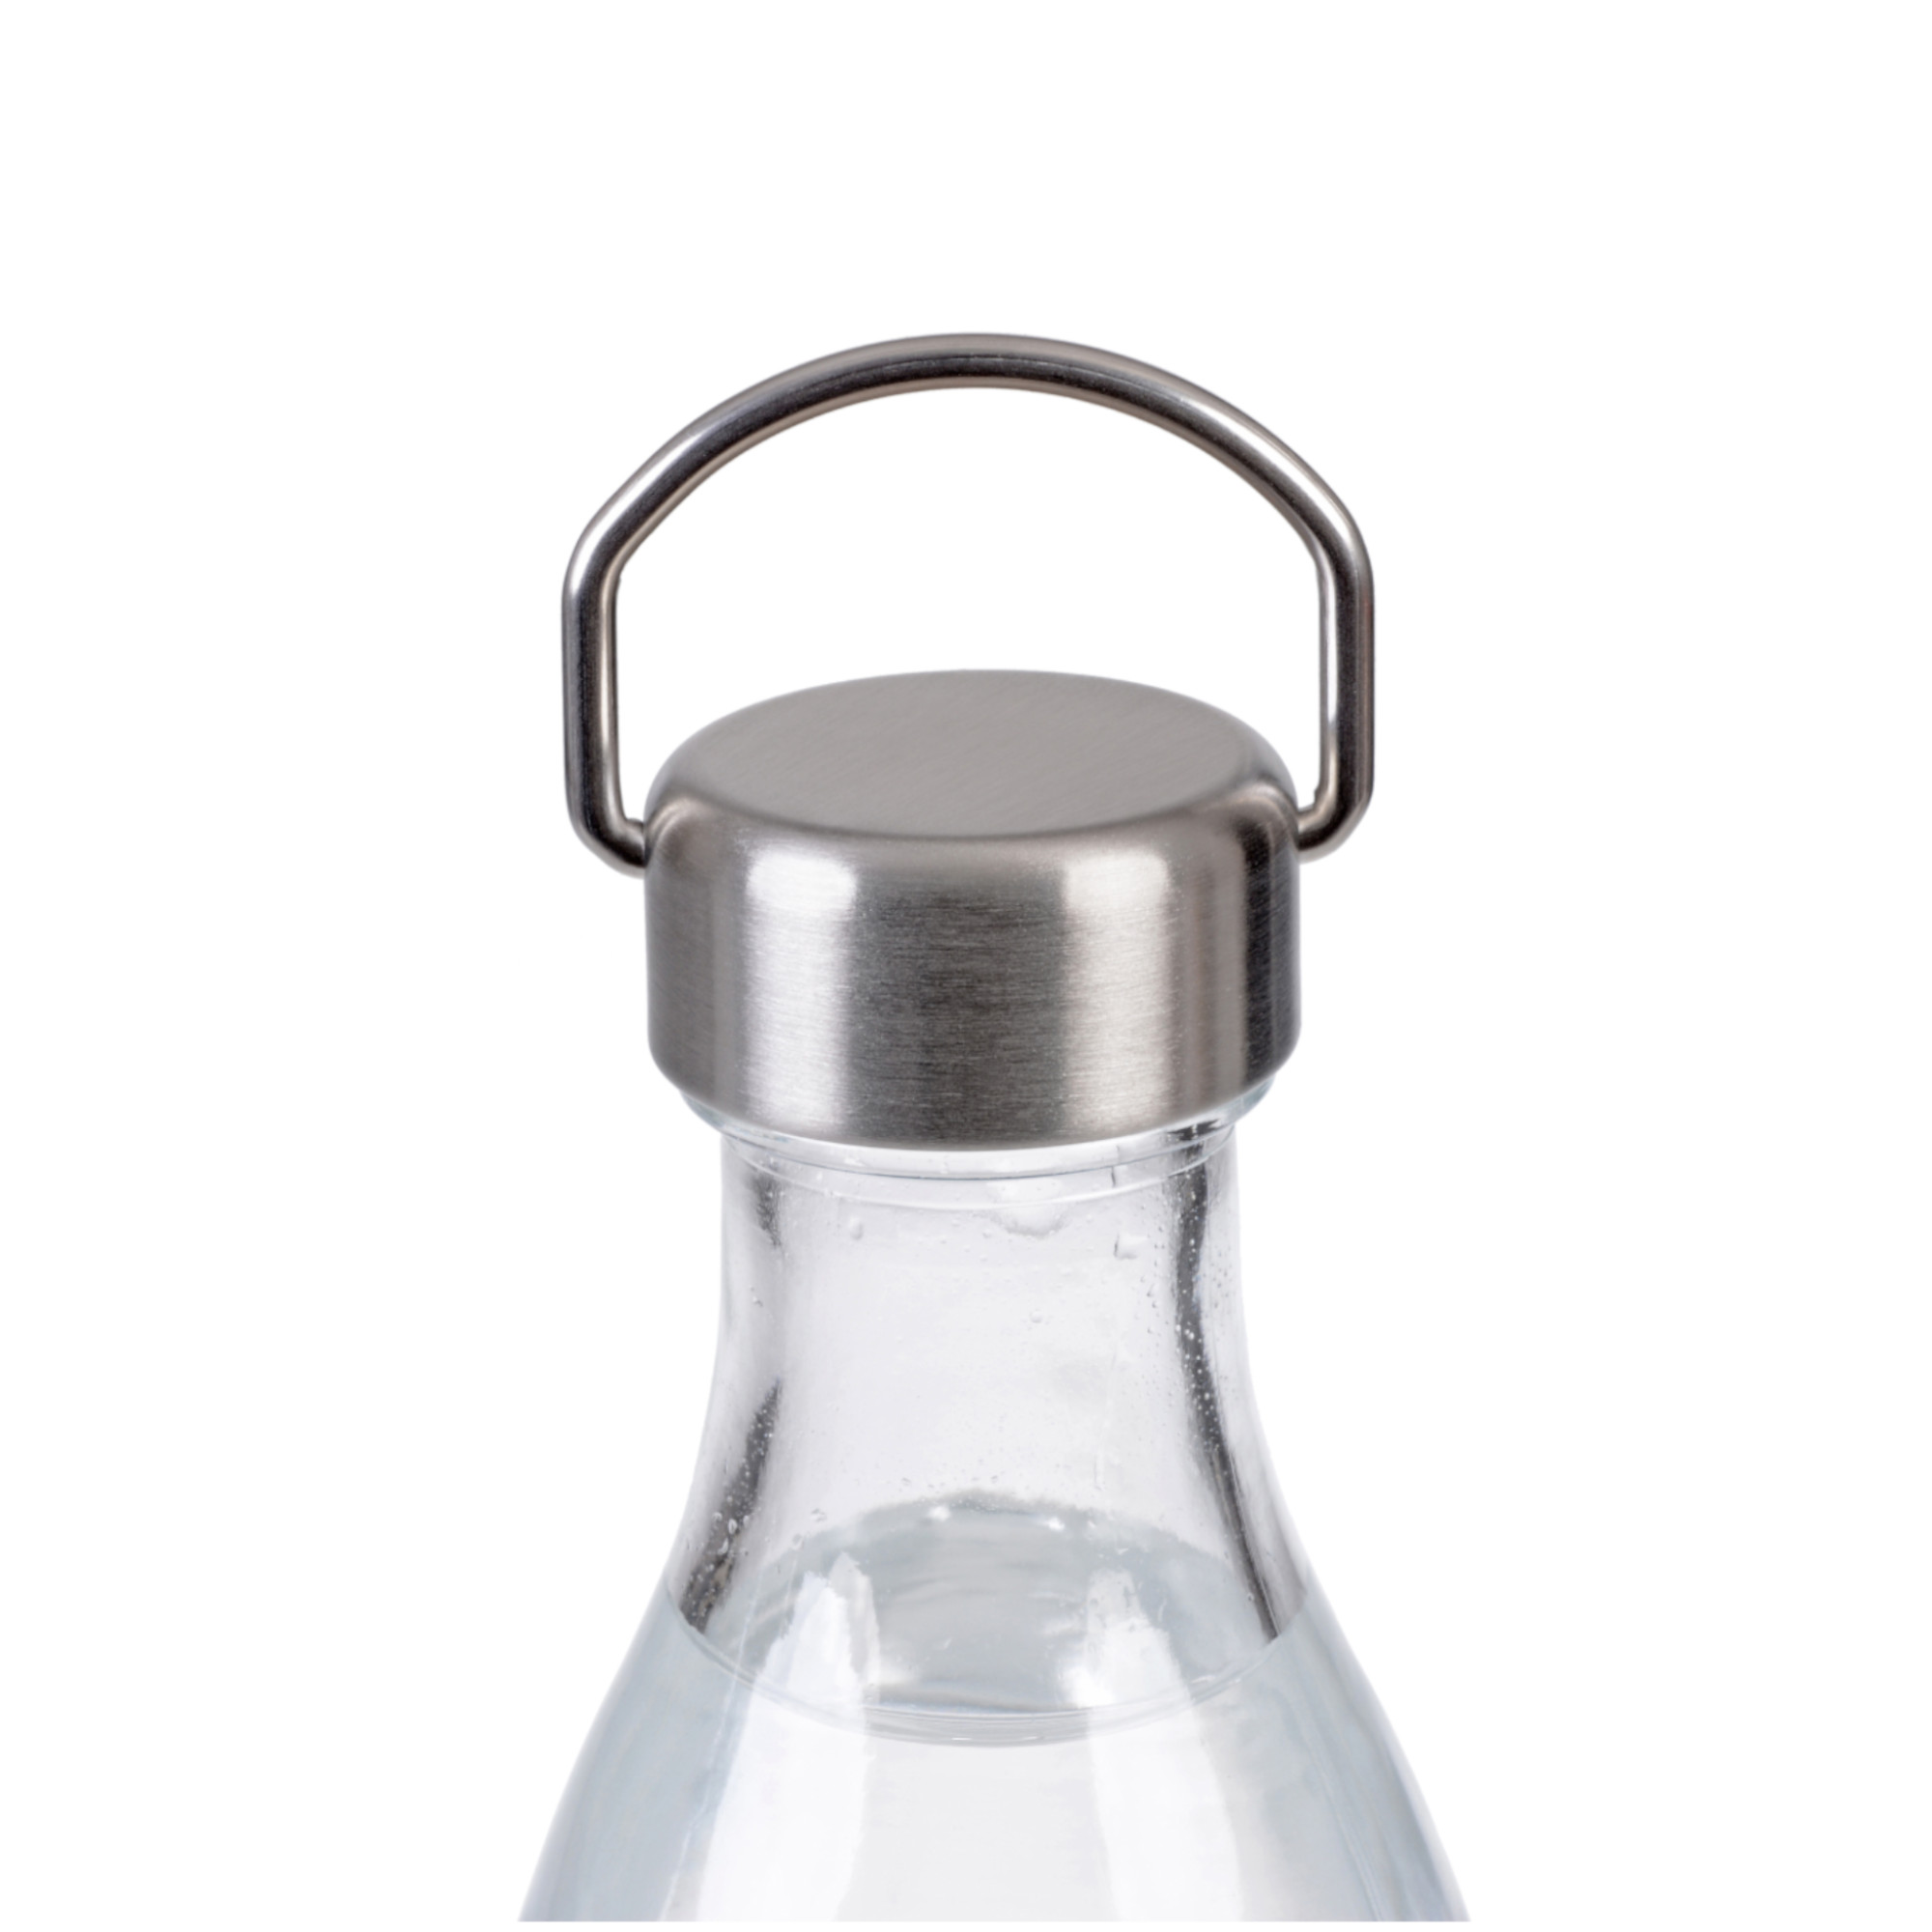 Schraubdeckel aus Edelstahl  für Sodastreamflaschen